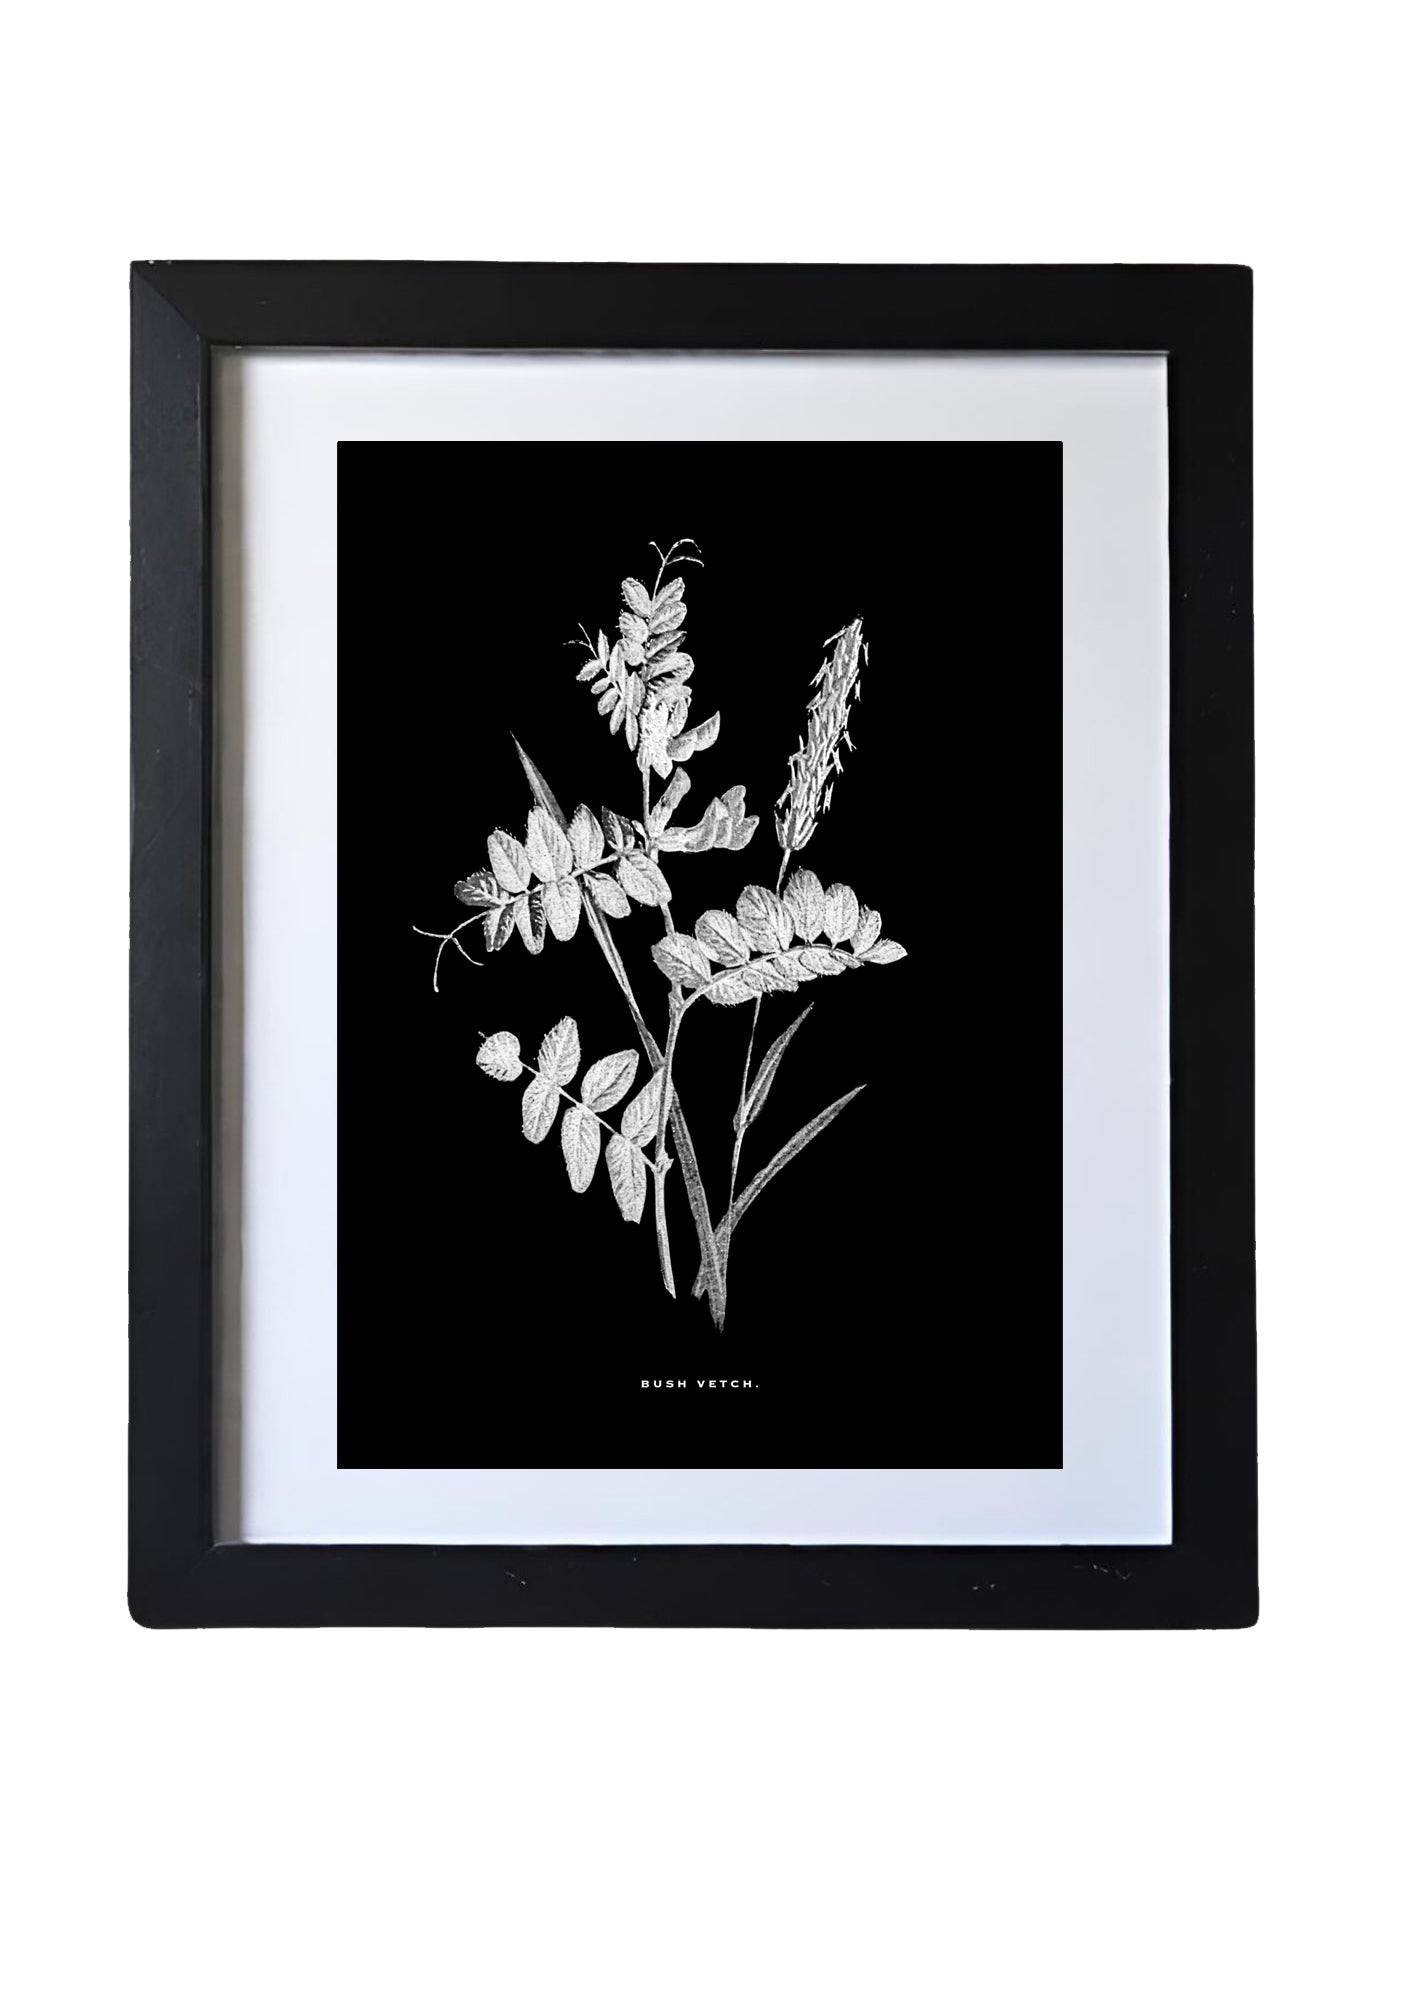 Black & White Framed Vintage Botanical Floral Art Prints: Set Of Four